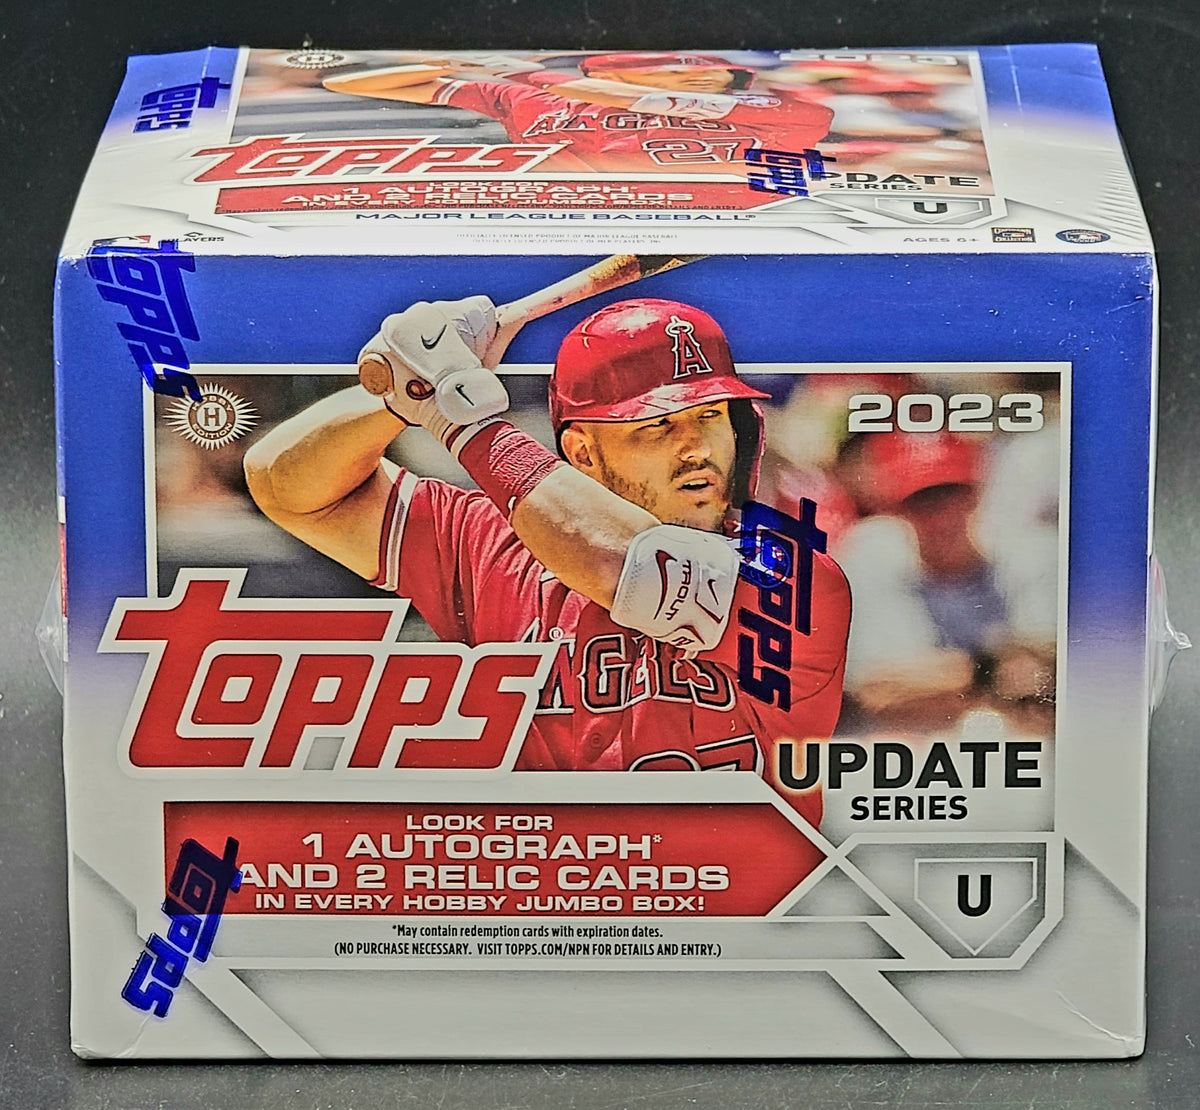 2023 Topps Series 2 Baseball 46 Card Hobby Jumbo Pack